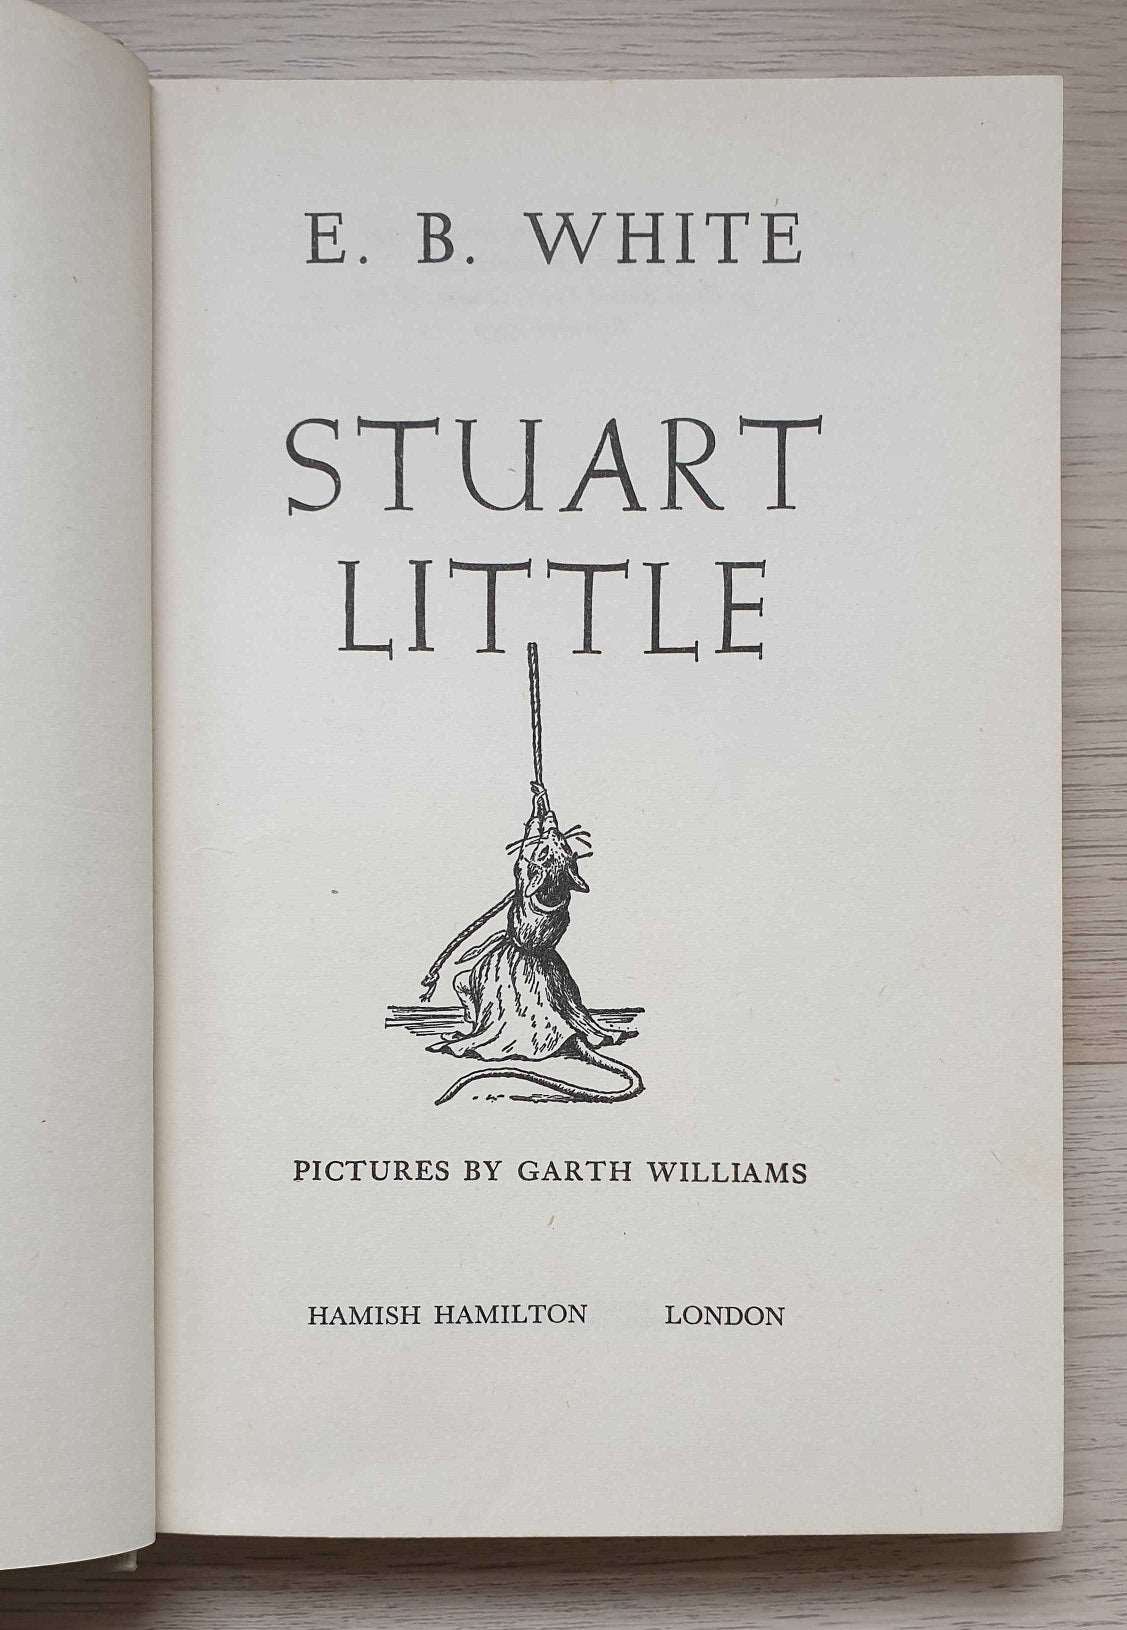 Stuart Little 1950s Antique Edition